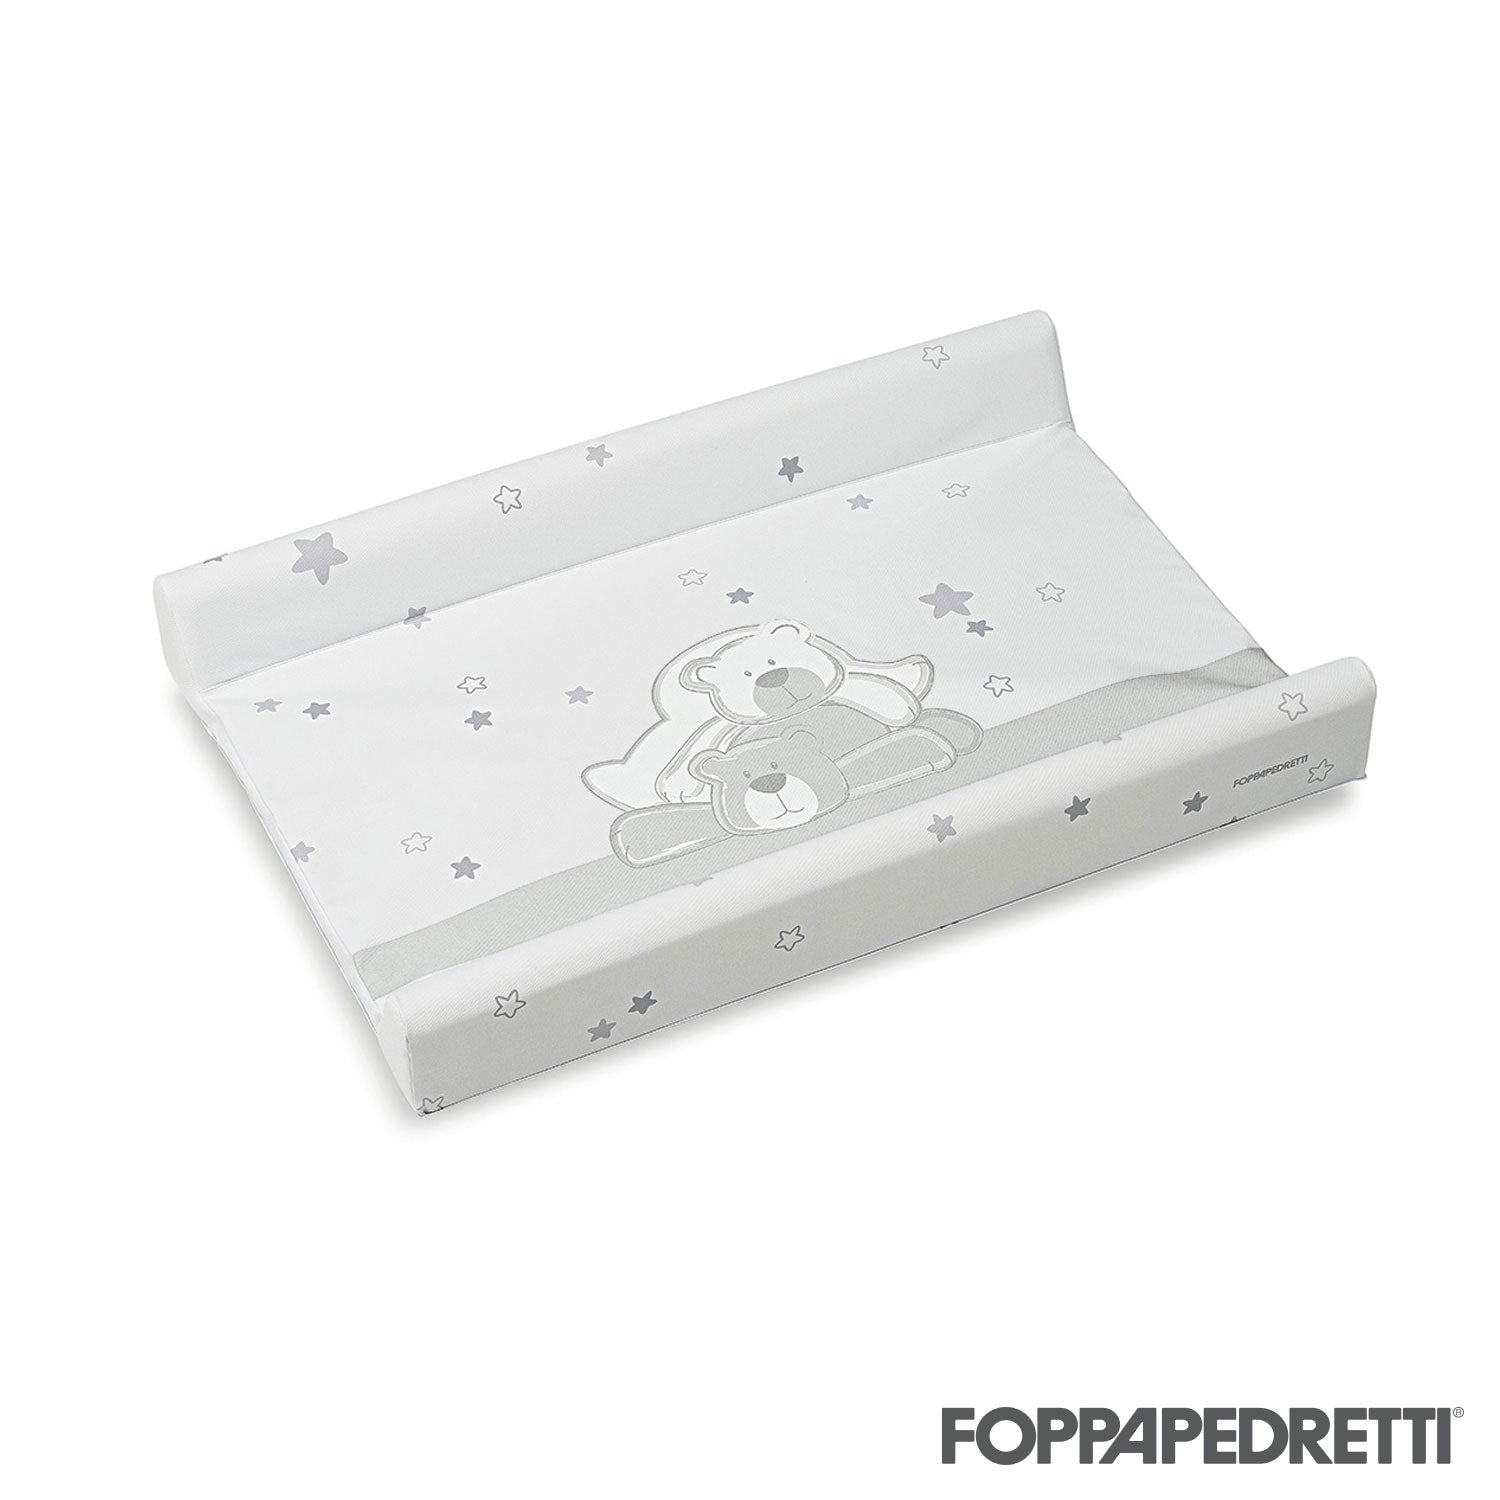 Foppapedretti - Materassino per Fasciatoio - Ricambio Originale